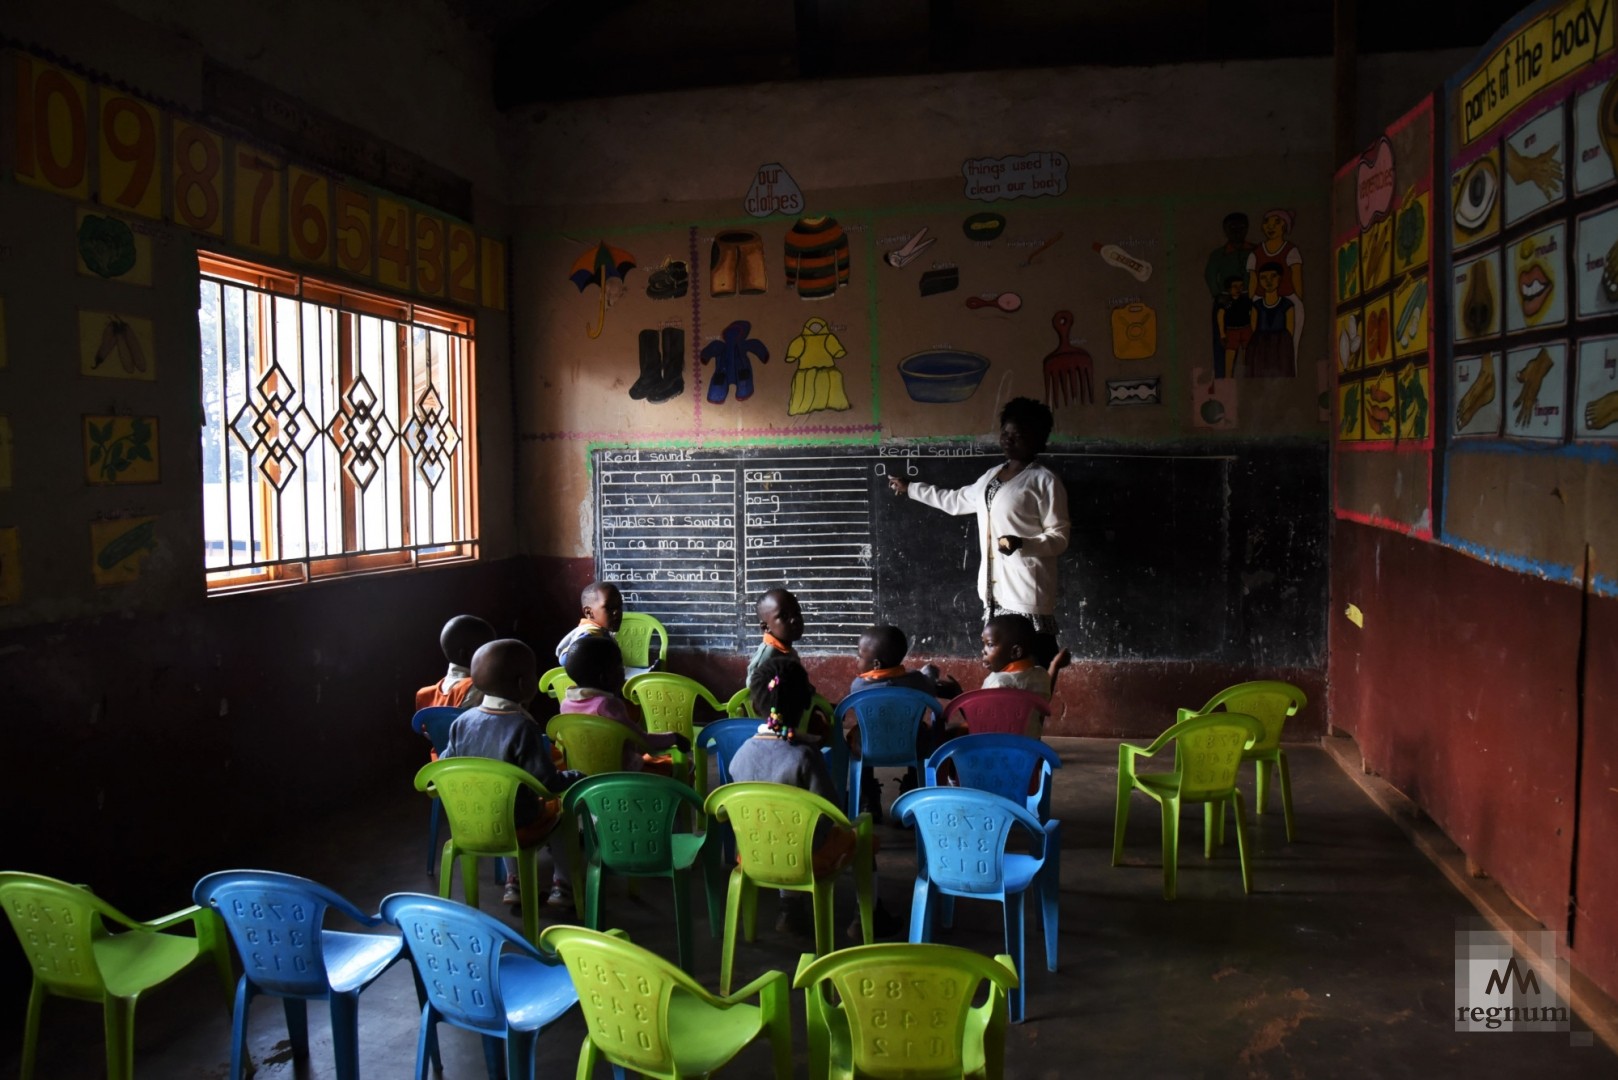 Начальный класс подготовительной школы, где дети в возрасте 3-5 лет начинают изучать цифры и английский алфавит. Масинди, Уганда